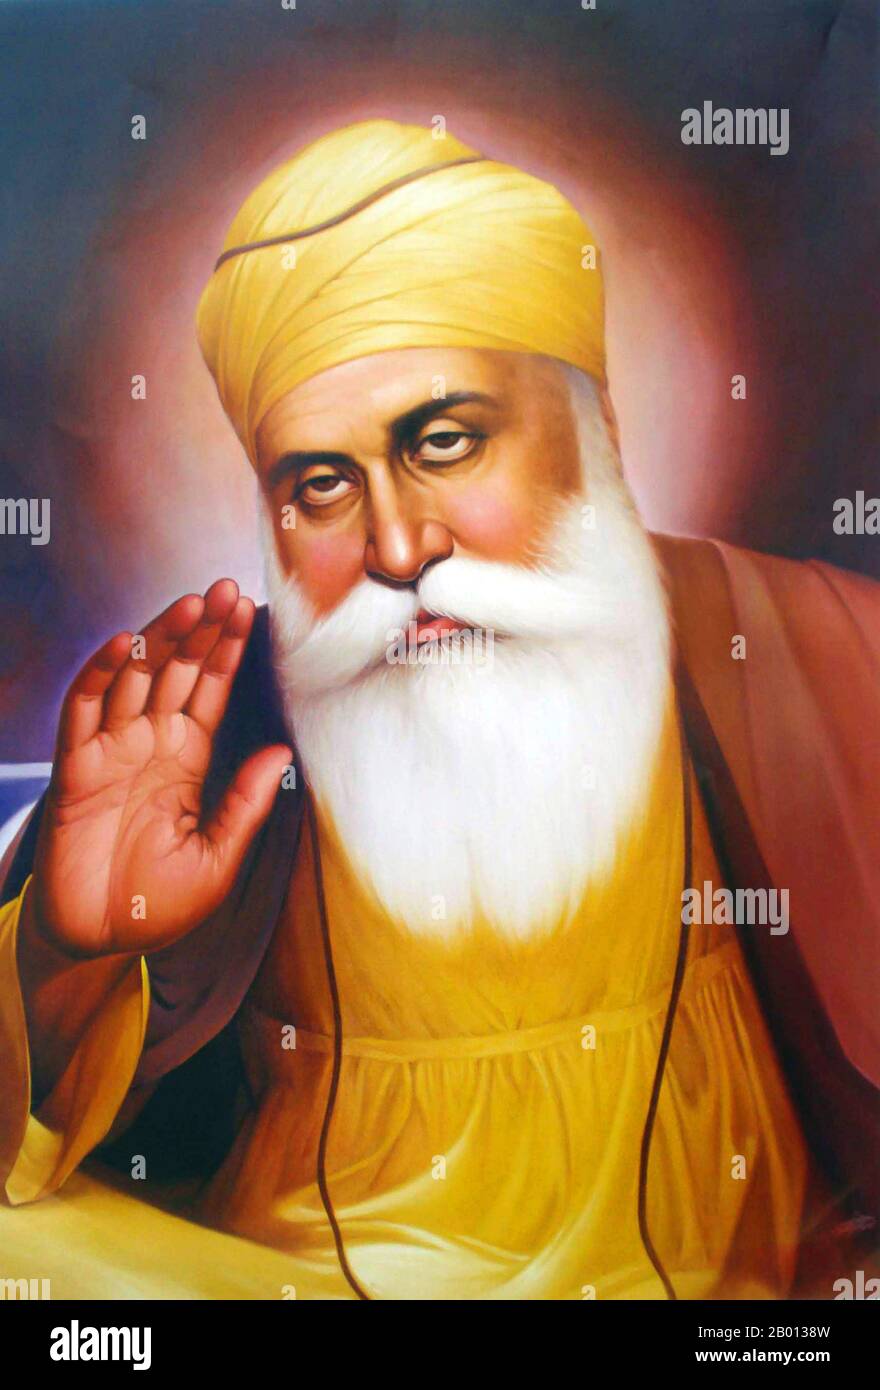 India: Guru Nanak Dev (15 aprile 1469 – 22 settembre 1539), il primo dei dieci Guru Sikh (1469-1539). Il guru Nanak (1469-1539), conosciuto anche come Baba Nanak, fu il fondatore della religione del Sikhismo e il primo dei dieci Guru sikh. I Sikh credono che tutti i Guru successivi possedessero la divinità e l'autorità religiosa di Guru Nanak. Si dice che abbia viaggiato in tutta l'Asia, insegnando il messaggio di 'ik onkar' ('un Dio'), 'la verità Eterna'. Foto Stock